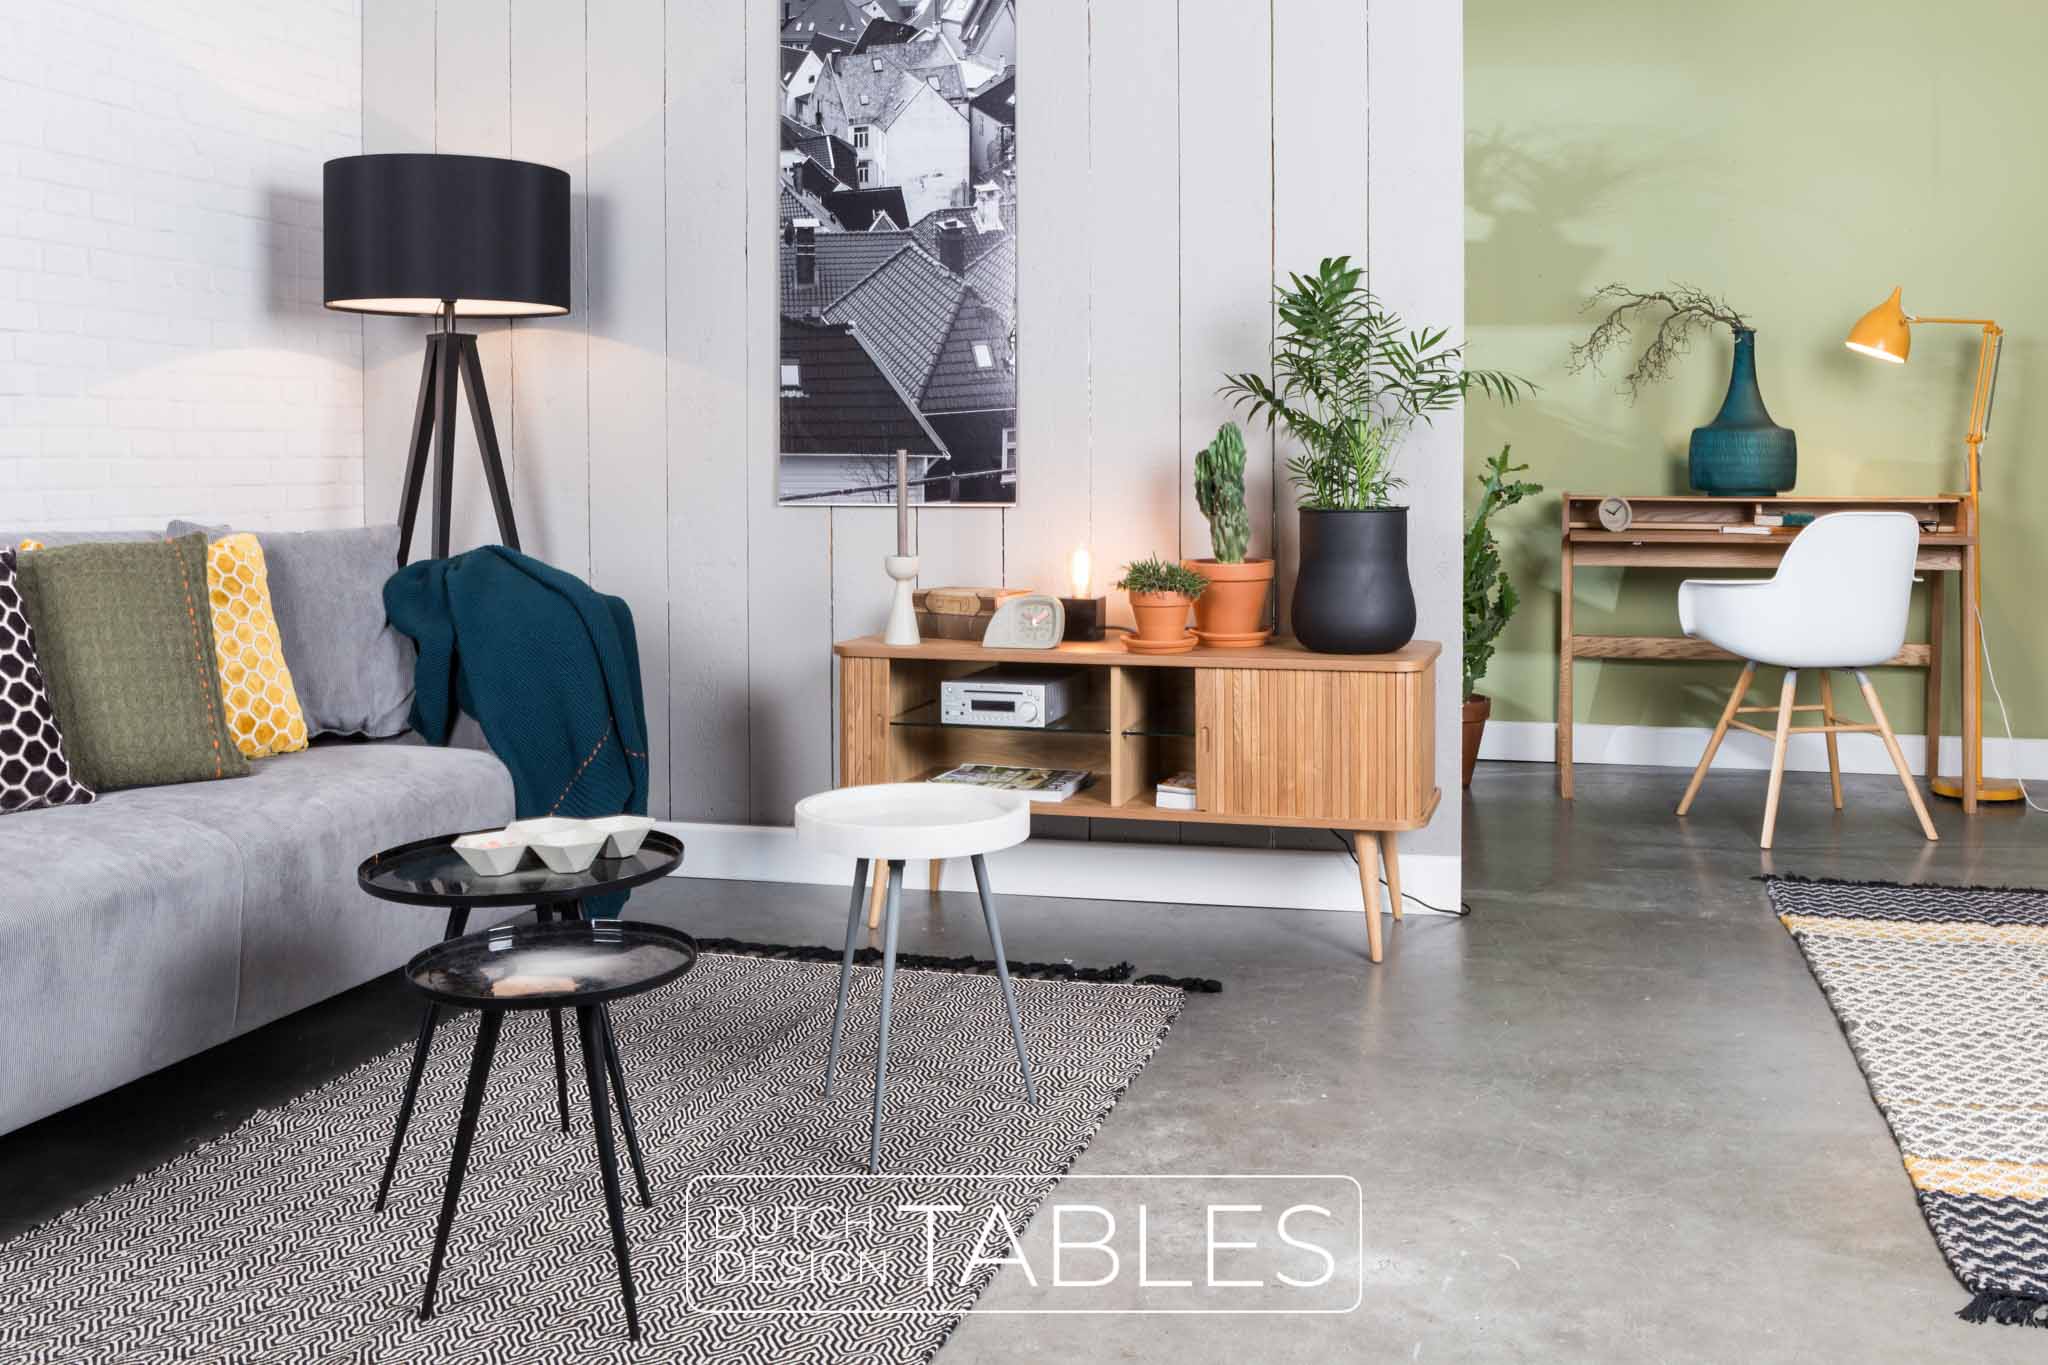 In detail Isoleren Eed Stoel Zuiver Albert Kuip armchair | 6 kleuren | gratis verzending! – Dutch  Design Tables